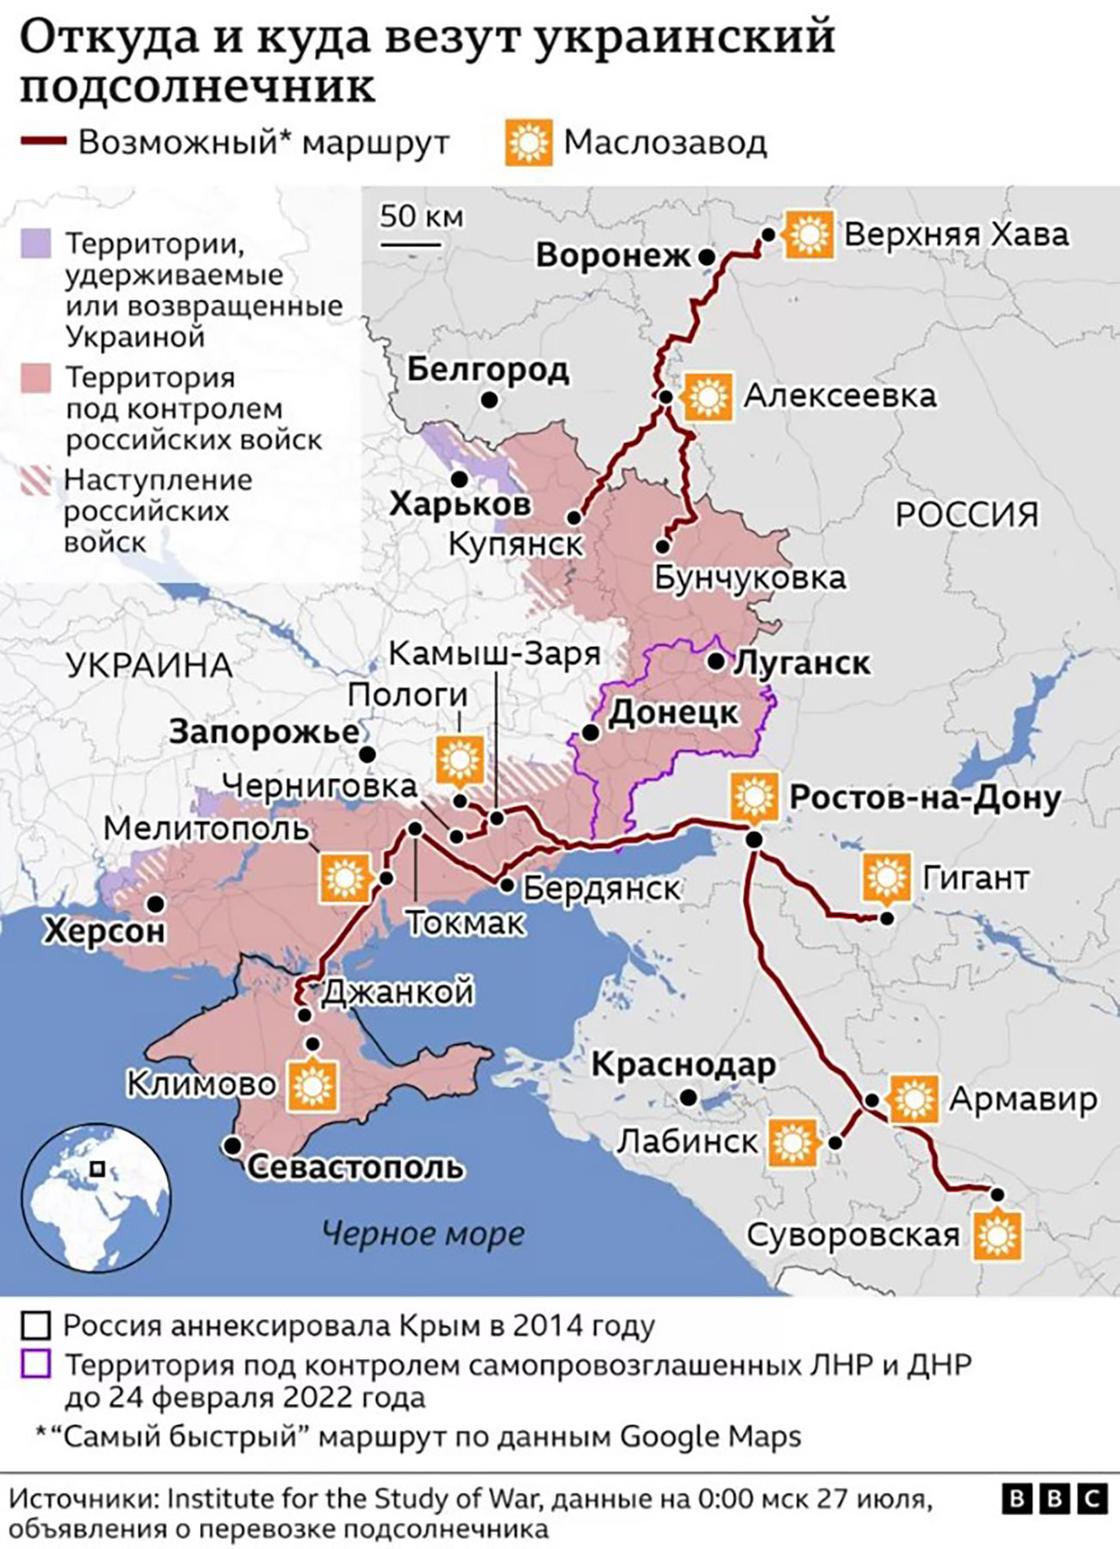 Откуда и куда везут украинский подсолнечник